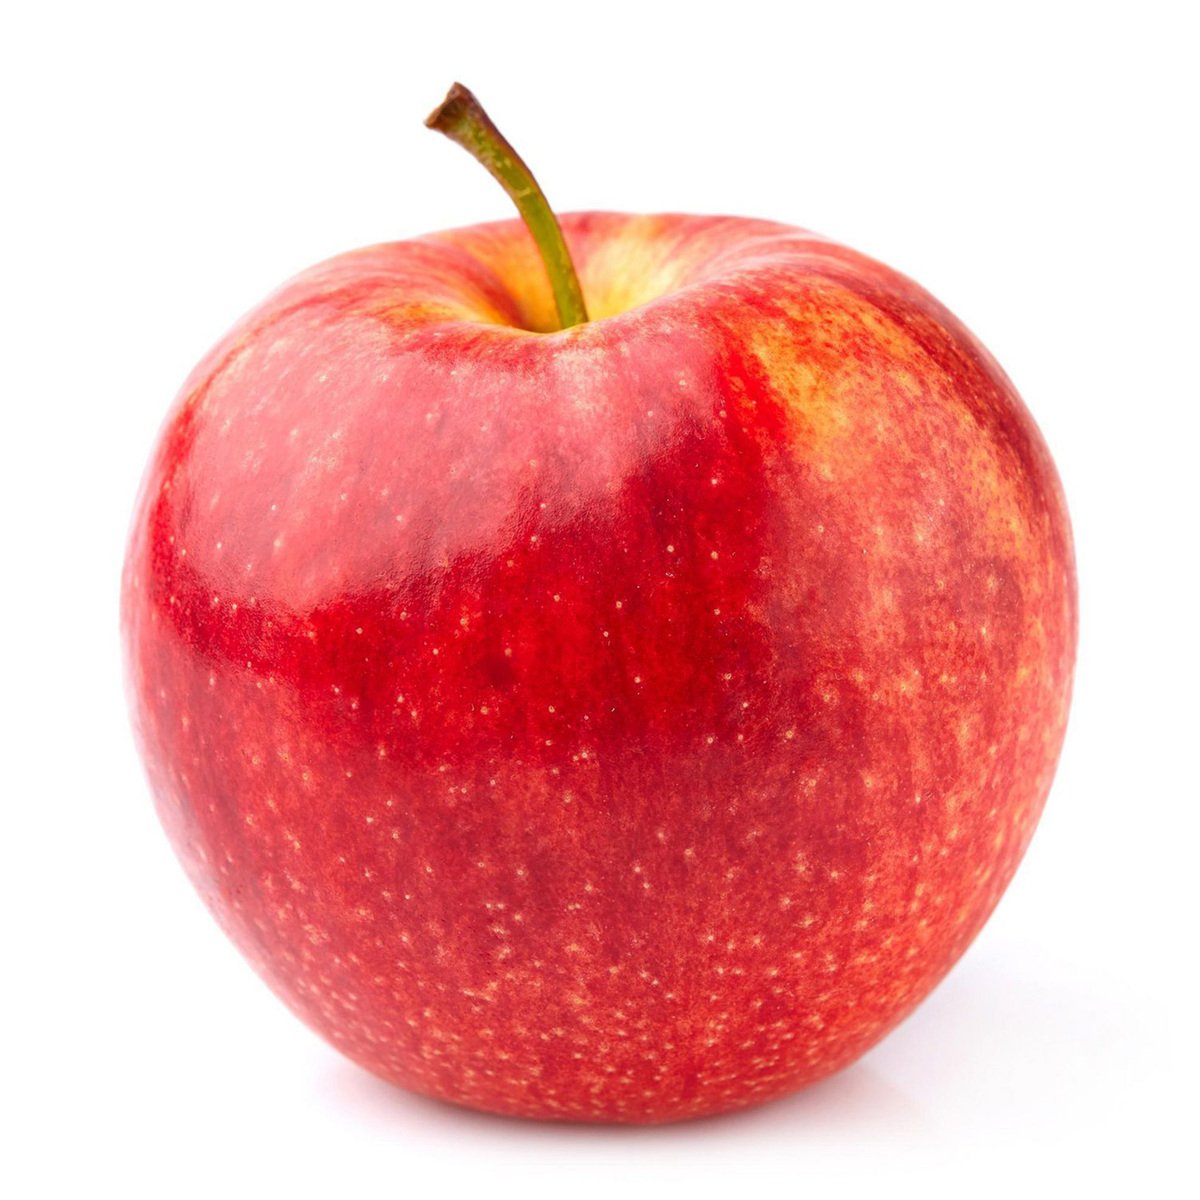 Buy Apple Royal Gala Jumbo Chile 1 kg Online at Best Price | Apples | Lulu KSA in UAE